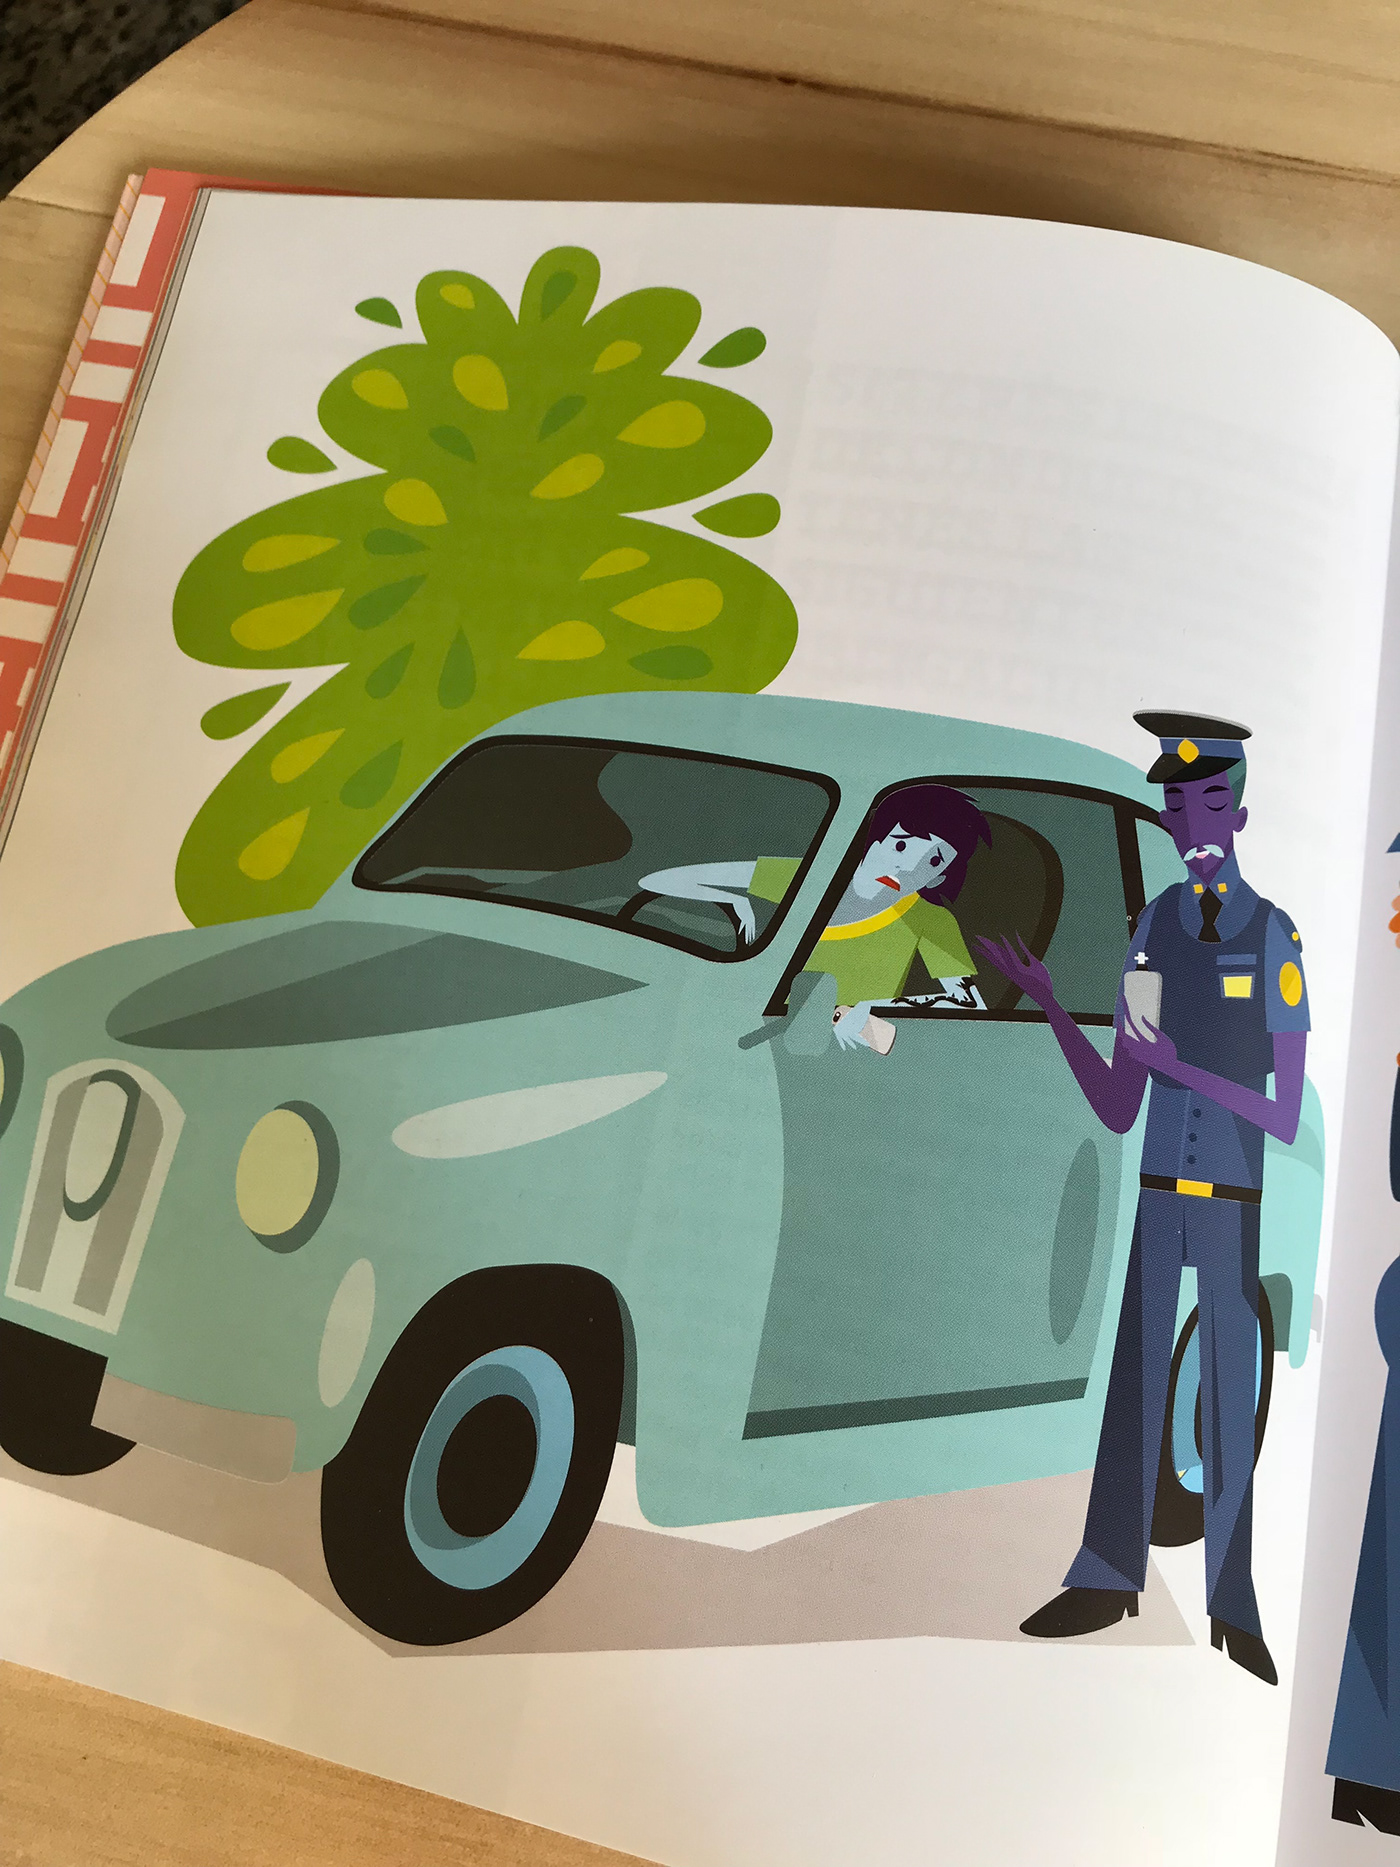 teenagers book rights Diversity editorial ilustracion Adolescentes derechos Young police